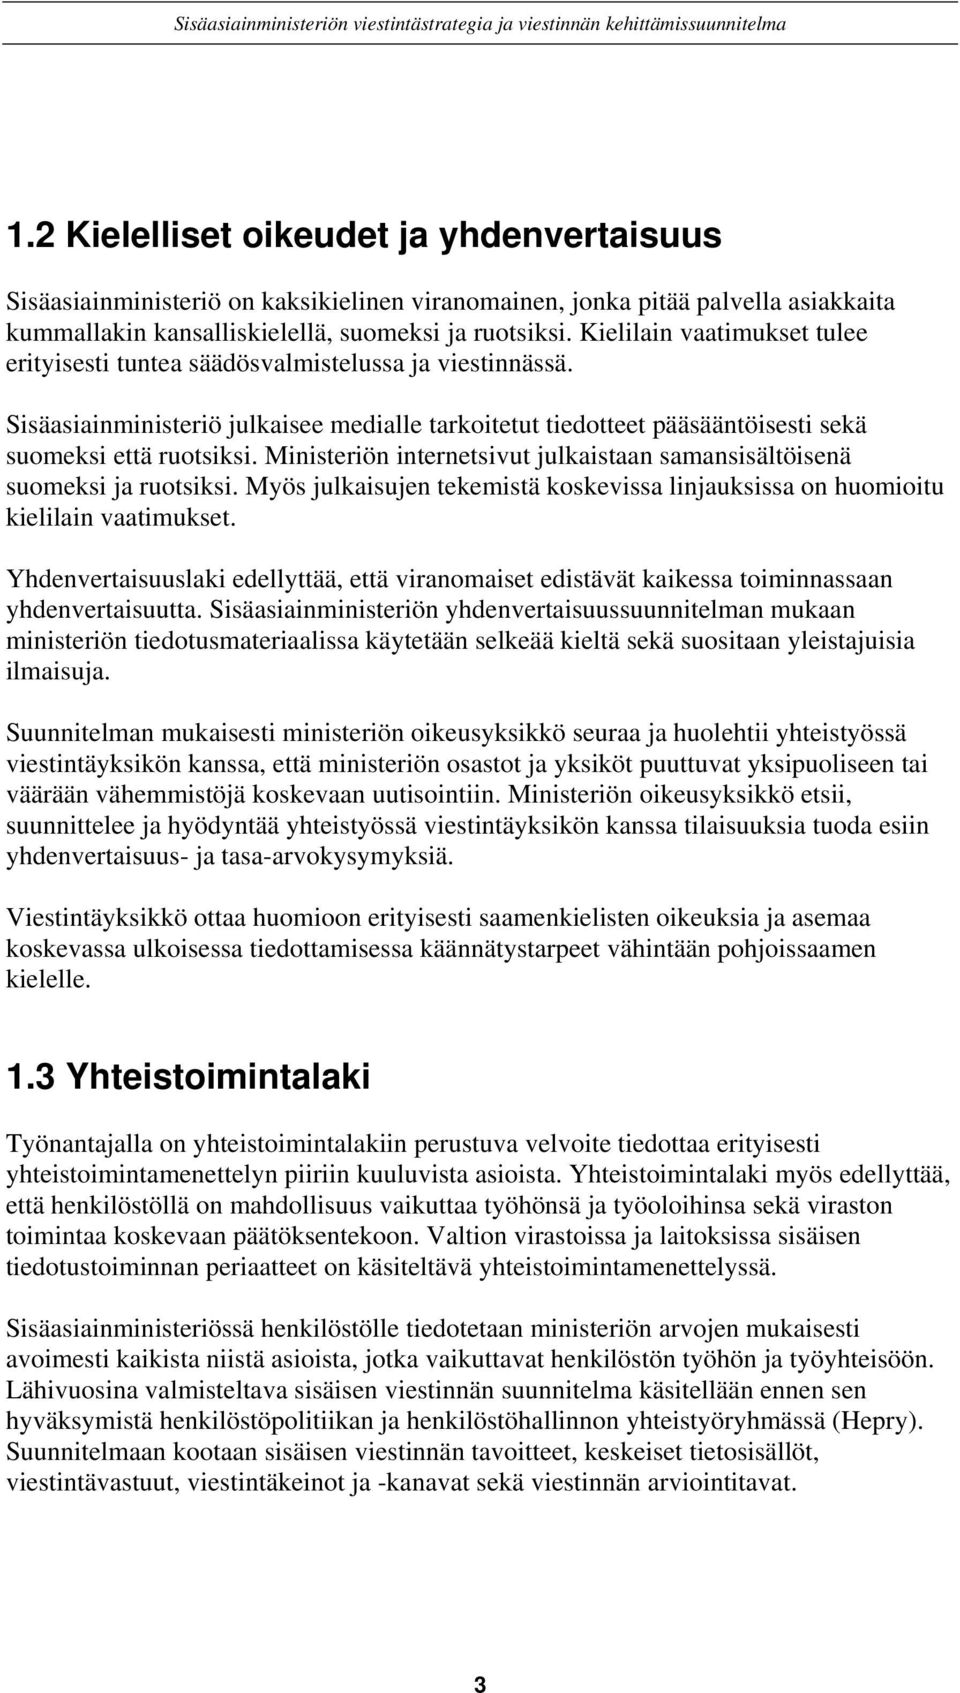 Ministeriön internetsivut julkaistaan samansisältöisenä suomeksi ja ruotsiksi. Myös julkaisujen tekemistä koskevissa linjauksissa on huomioitu kielilain vaatimukset.